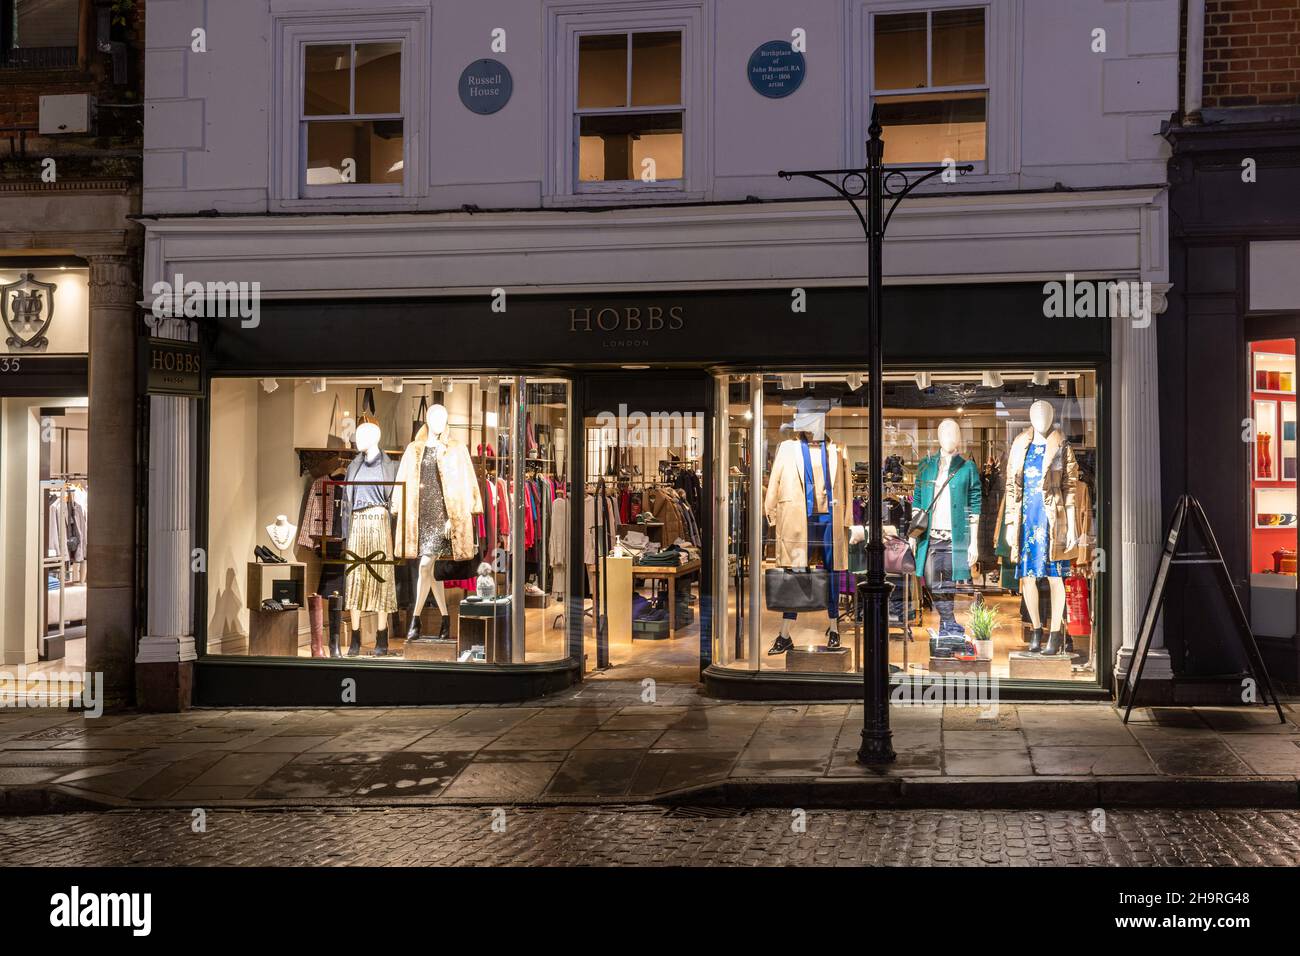 Vitrine du magasin Hobbs, magasin de vêtements pour femmes exposé de nuit sur High Street dans le centre-ville de Guildford, Surrey, Angleterre, Royaume-Uni Banque D'Images